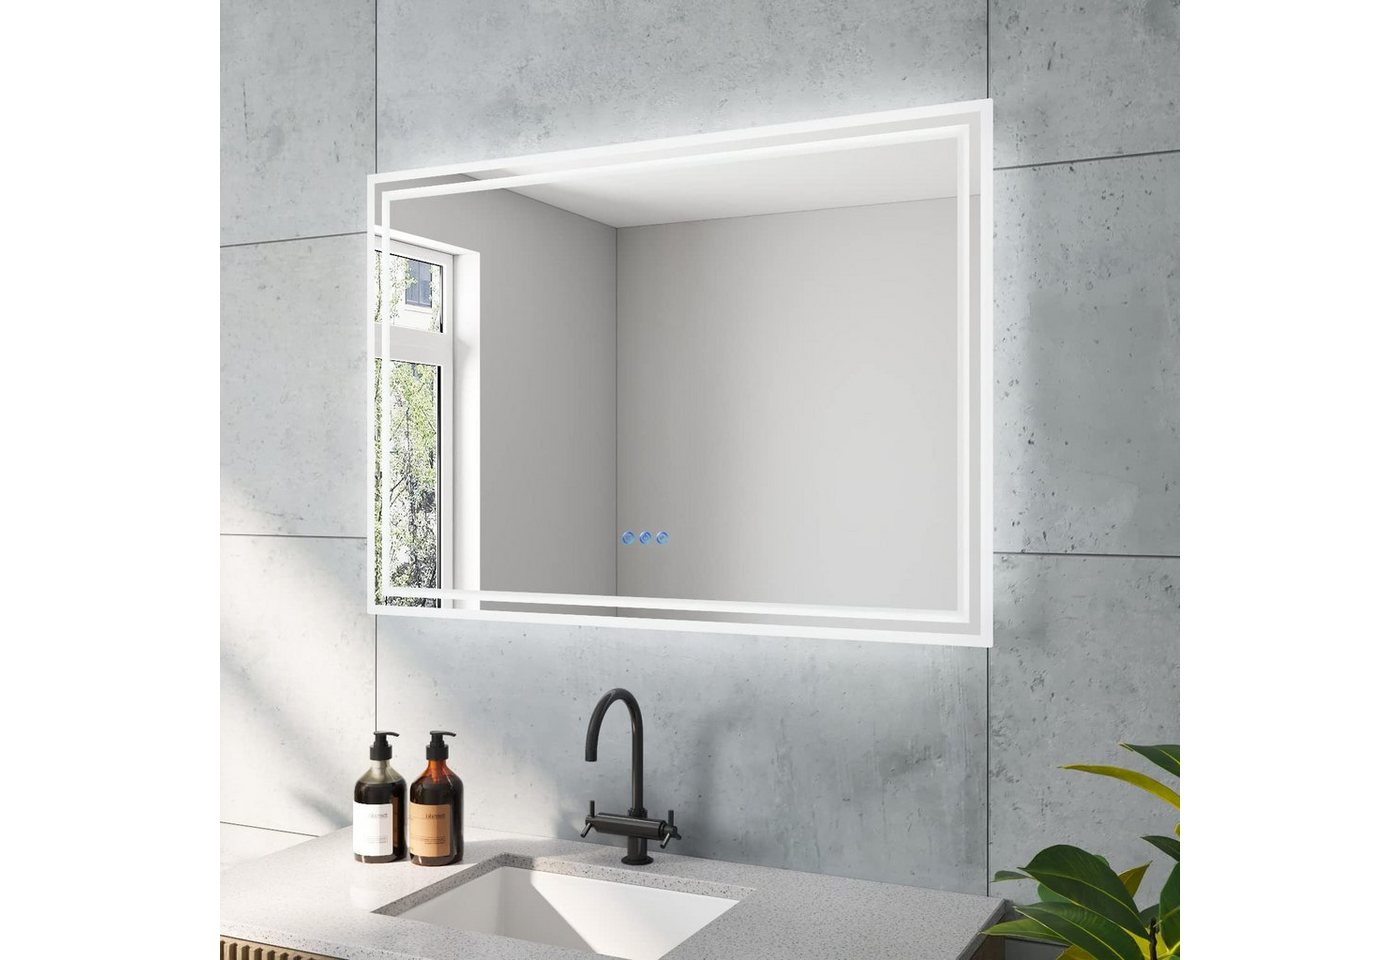 AQUABATOS LED-Lichtspiegel Badspiegel Led Spiegel mit Beleuchtung Badezimmerspiegel, Silber,Beschlagfrei,IP44,Energiesparend,2 Lichtleiste,Touch Schalter von AQUABATOS